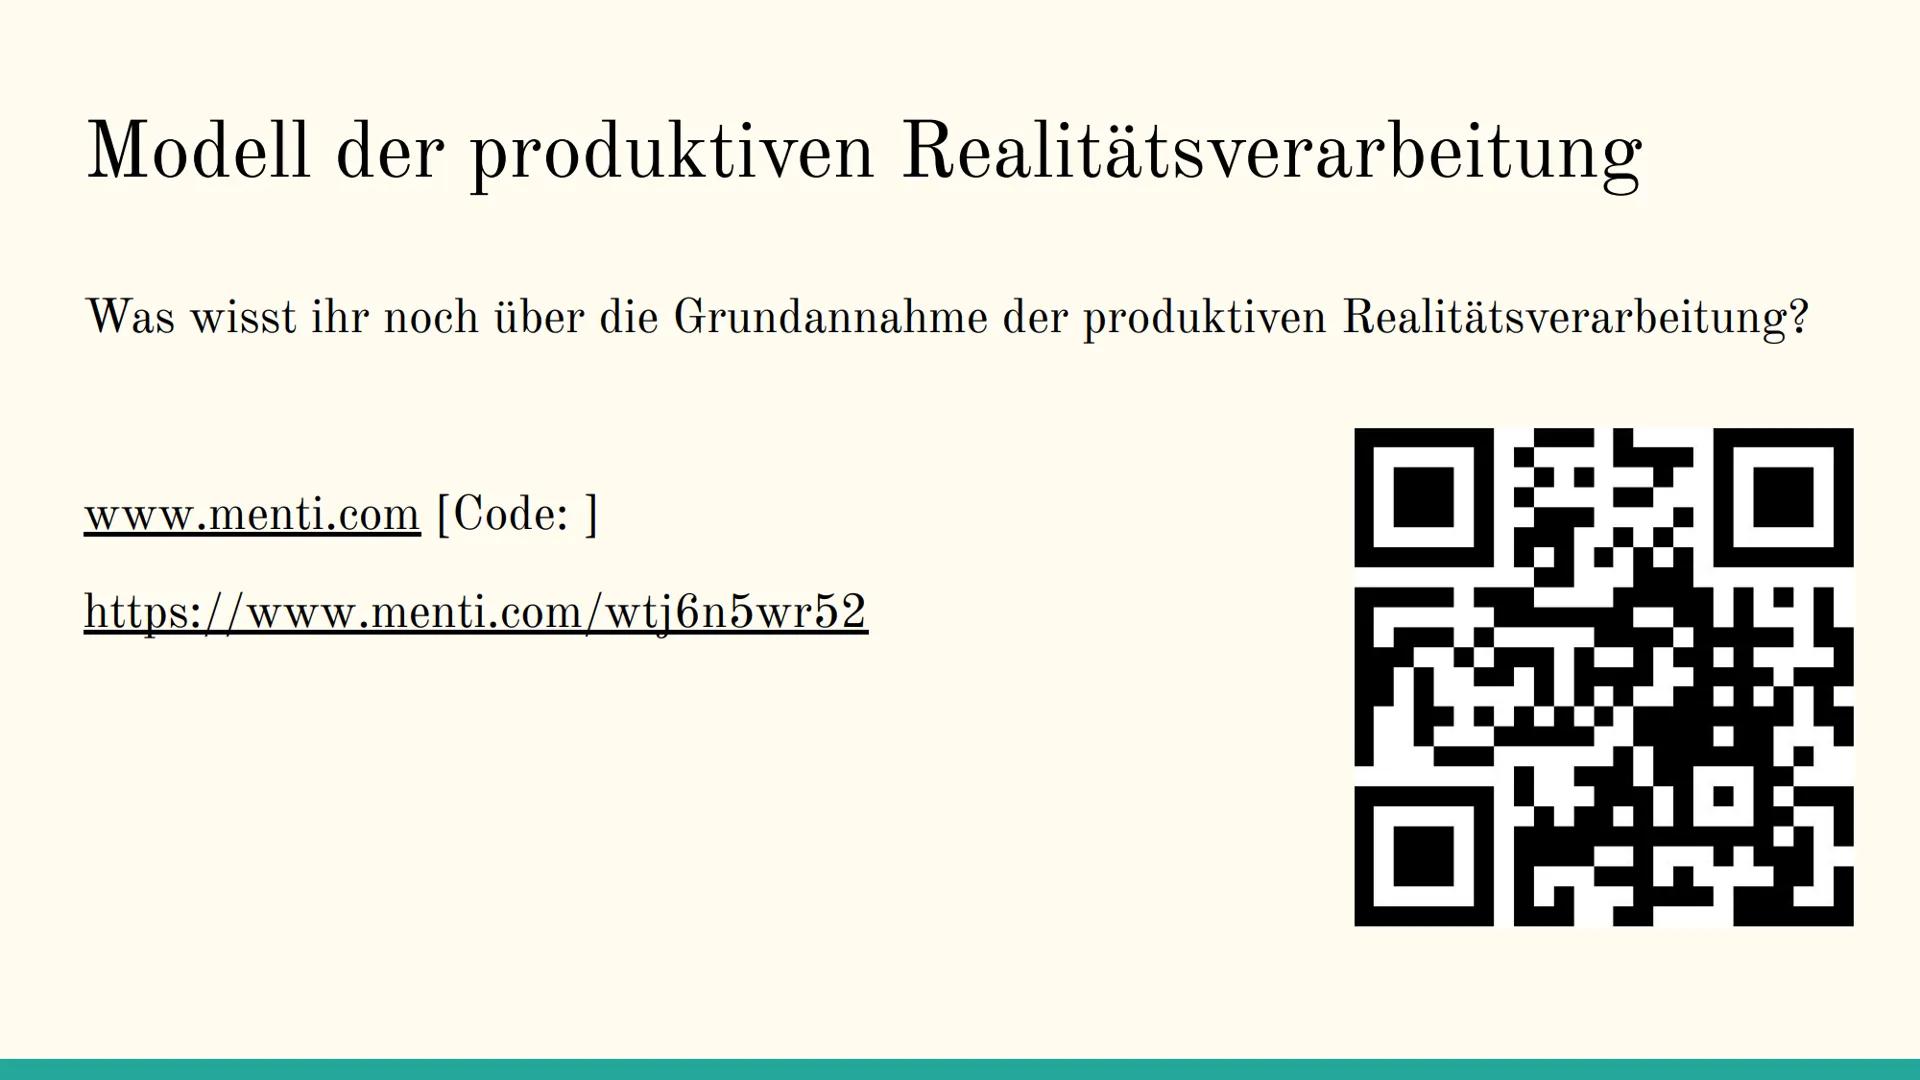 Das Modell der
produktiven
Realitätsverarbeitung
Nach Klaus Hurrelmann Inhaltsverzeichnis
1. Grundannahmen
2. Produktive Realitätsverarbeitu